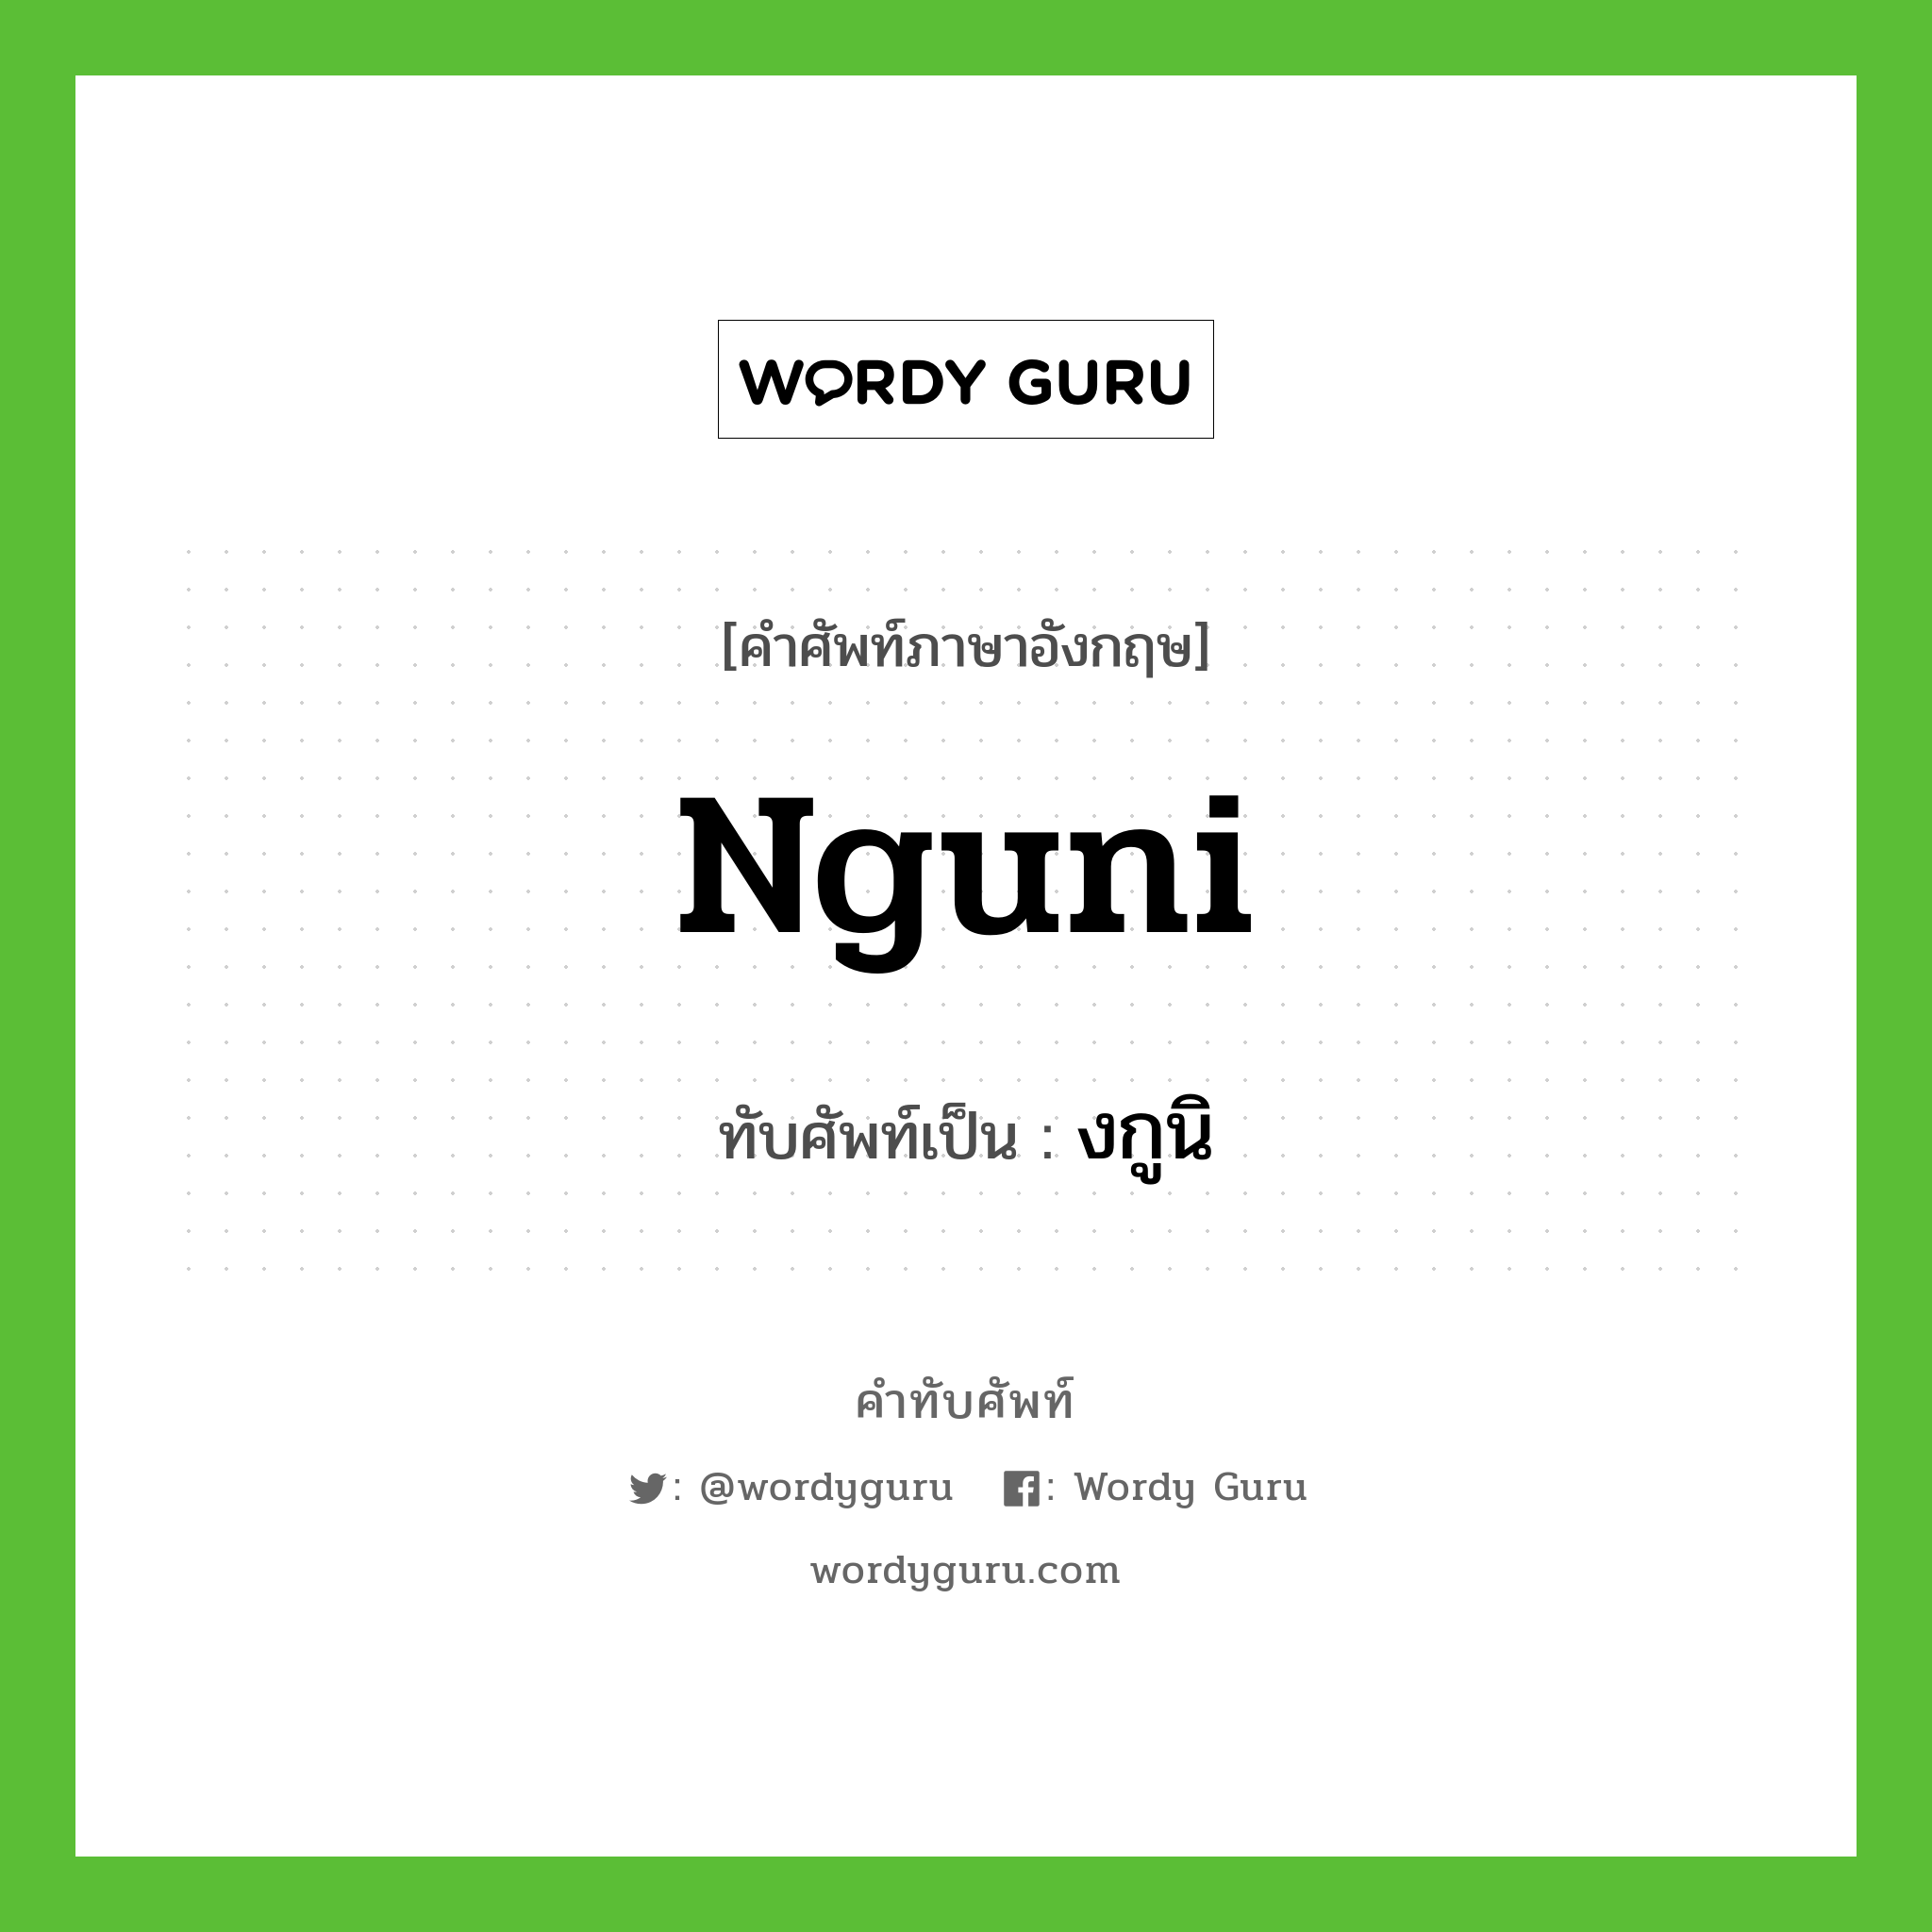 Nguni เขียนเป็นคำไทยว่าอะไร?, คำศัพท์ภาษาอังกฤษ Nguni ทับศัพท์เป็น งกูนิ